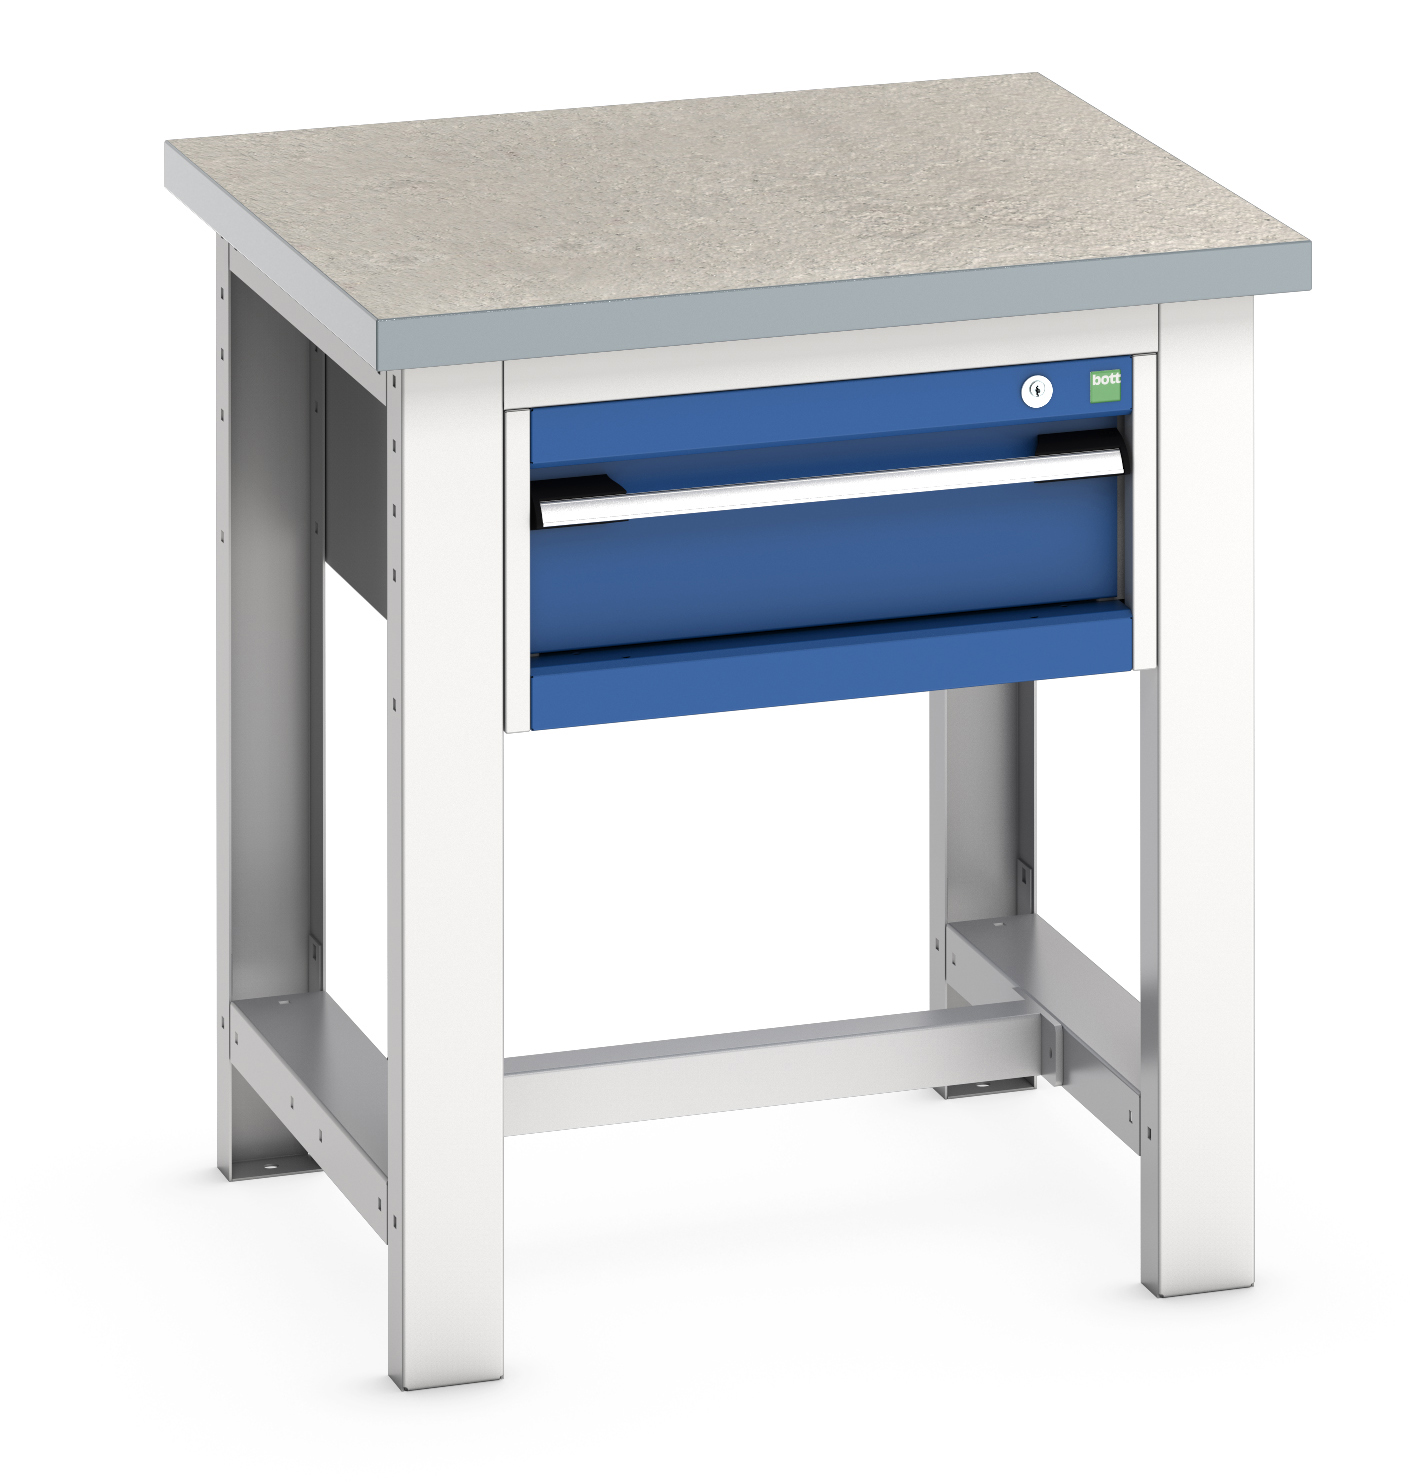 Bott Cubio Framework Workstand With 1 Drawer Cabinet - 41003523.11V